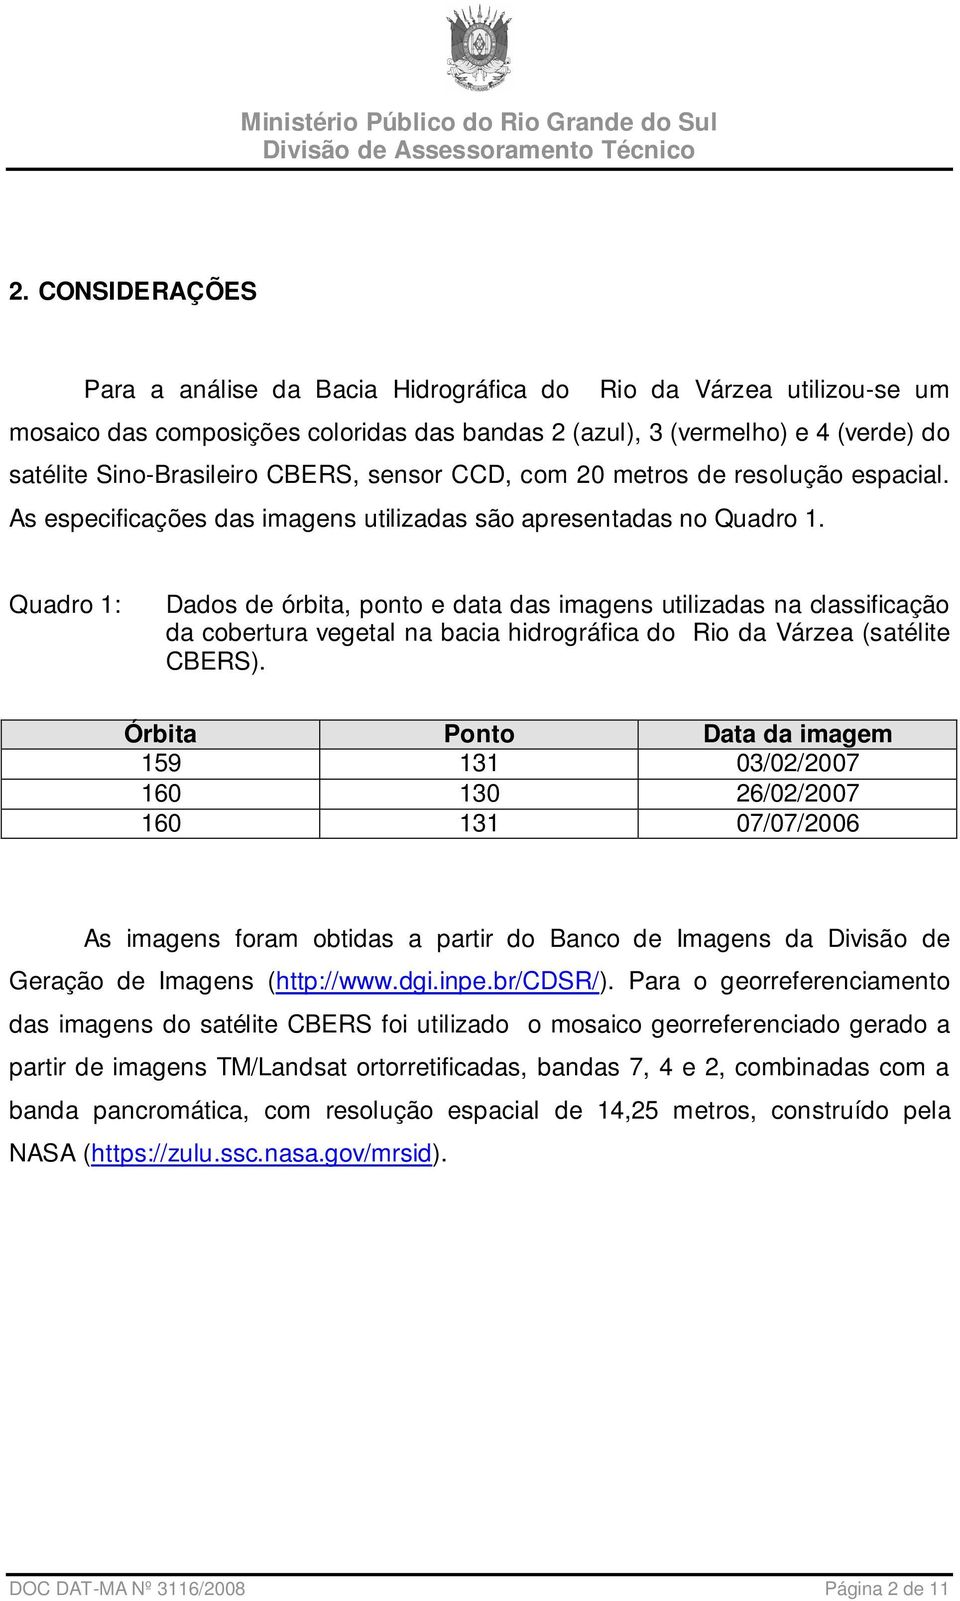 Quadro 1: Dados de órbita, ponto e data das imagens utilizadas na classificação da cobertura vegetal na bacia hidrográfica do Rio da Várzea (satélite CBERS).